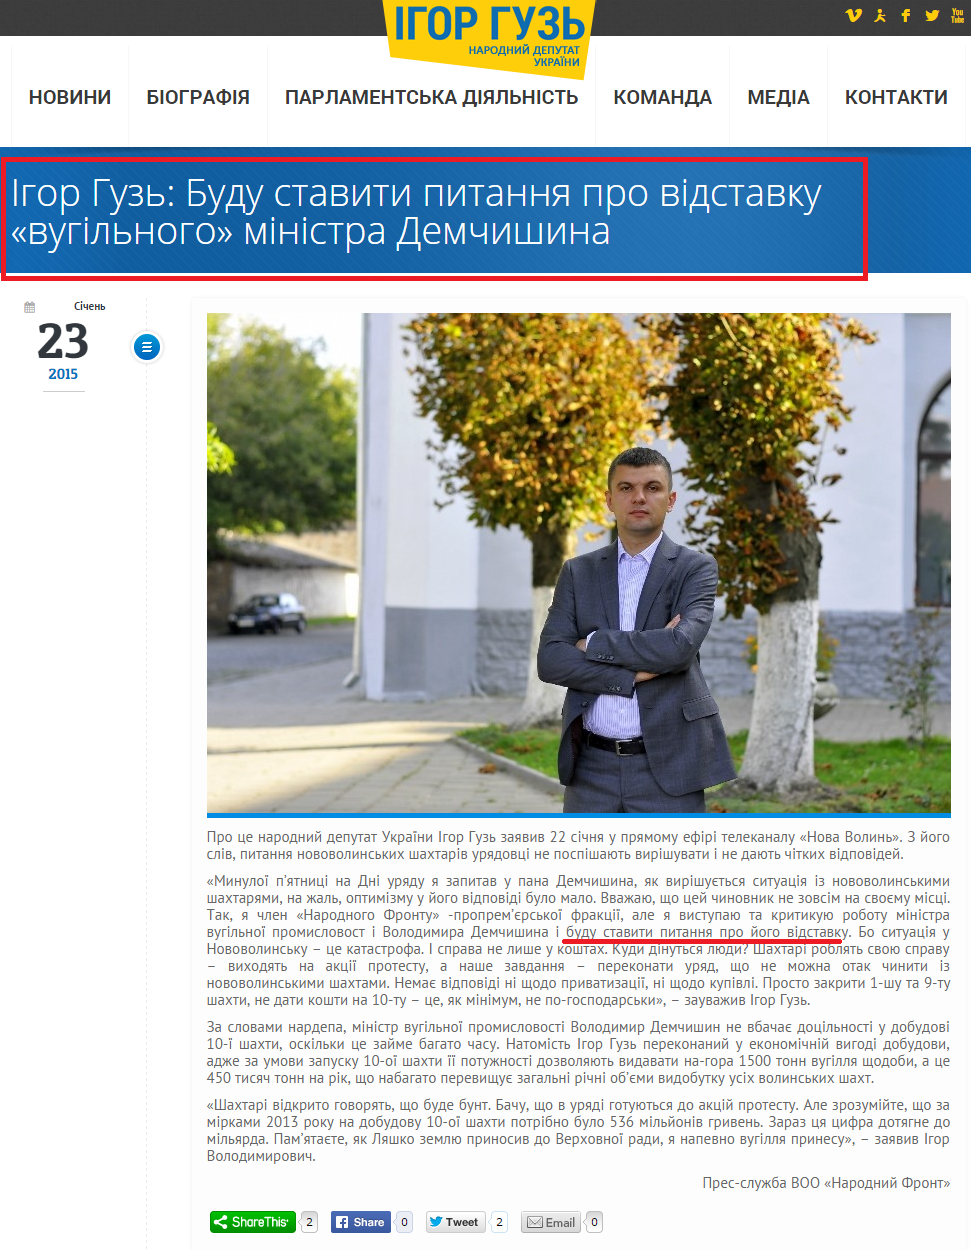 http://guz.in.ua/ihor-huz-budu-stavyty-pytannya-pro-vidstavku-vuhilnoho-ministra-demchyshyna.html